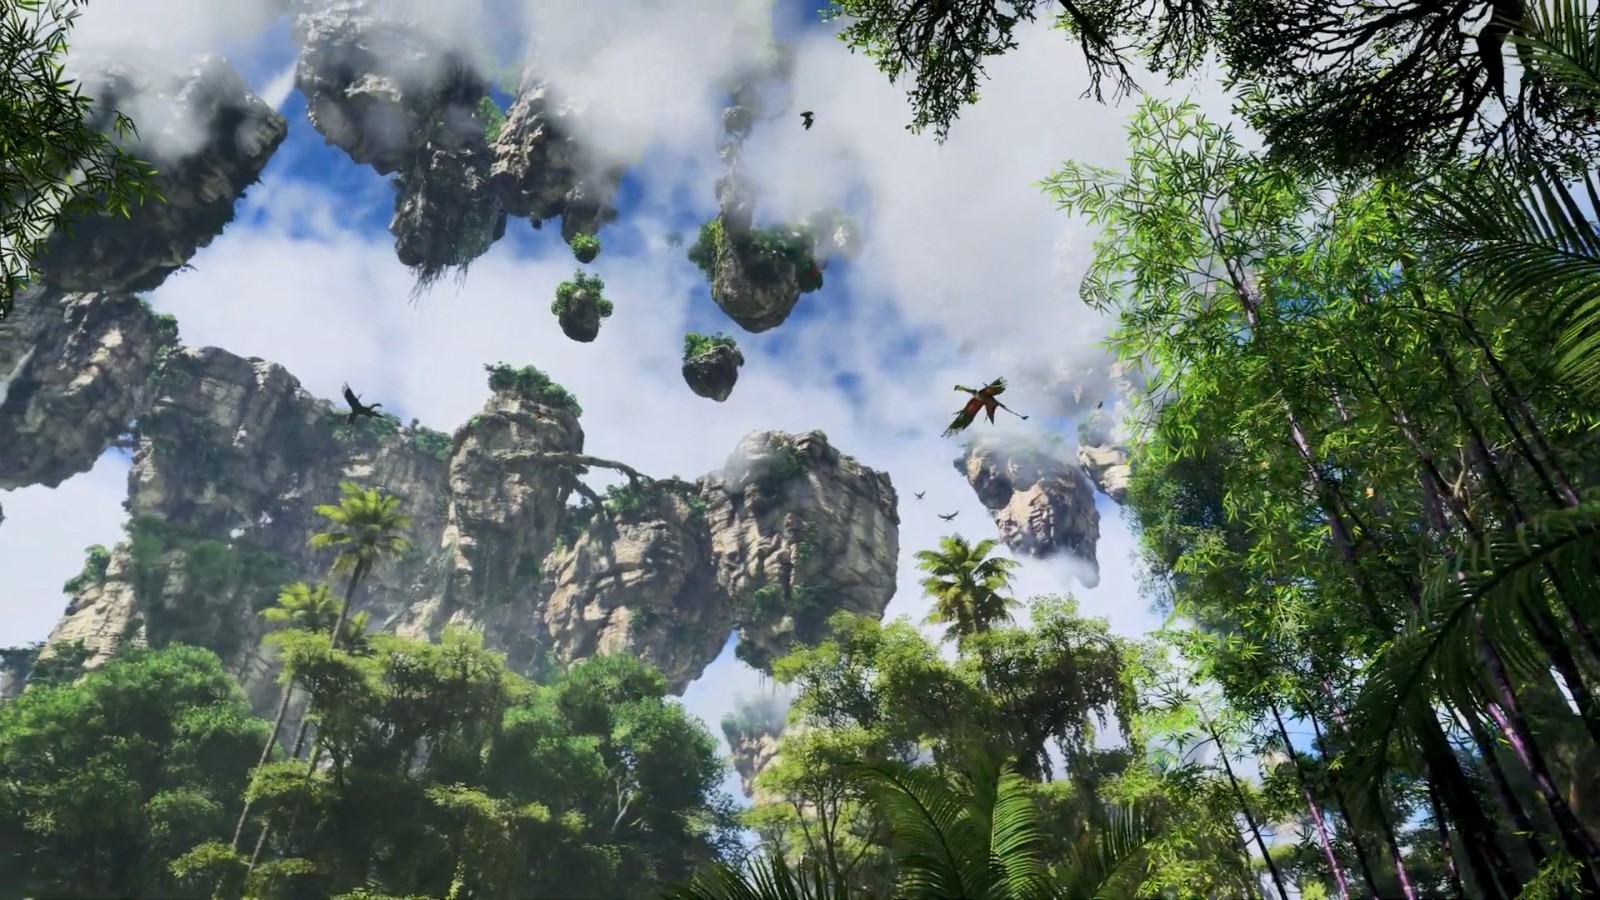 育碧發佈《阿凡達:潘多拉邊境》官方預告片